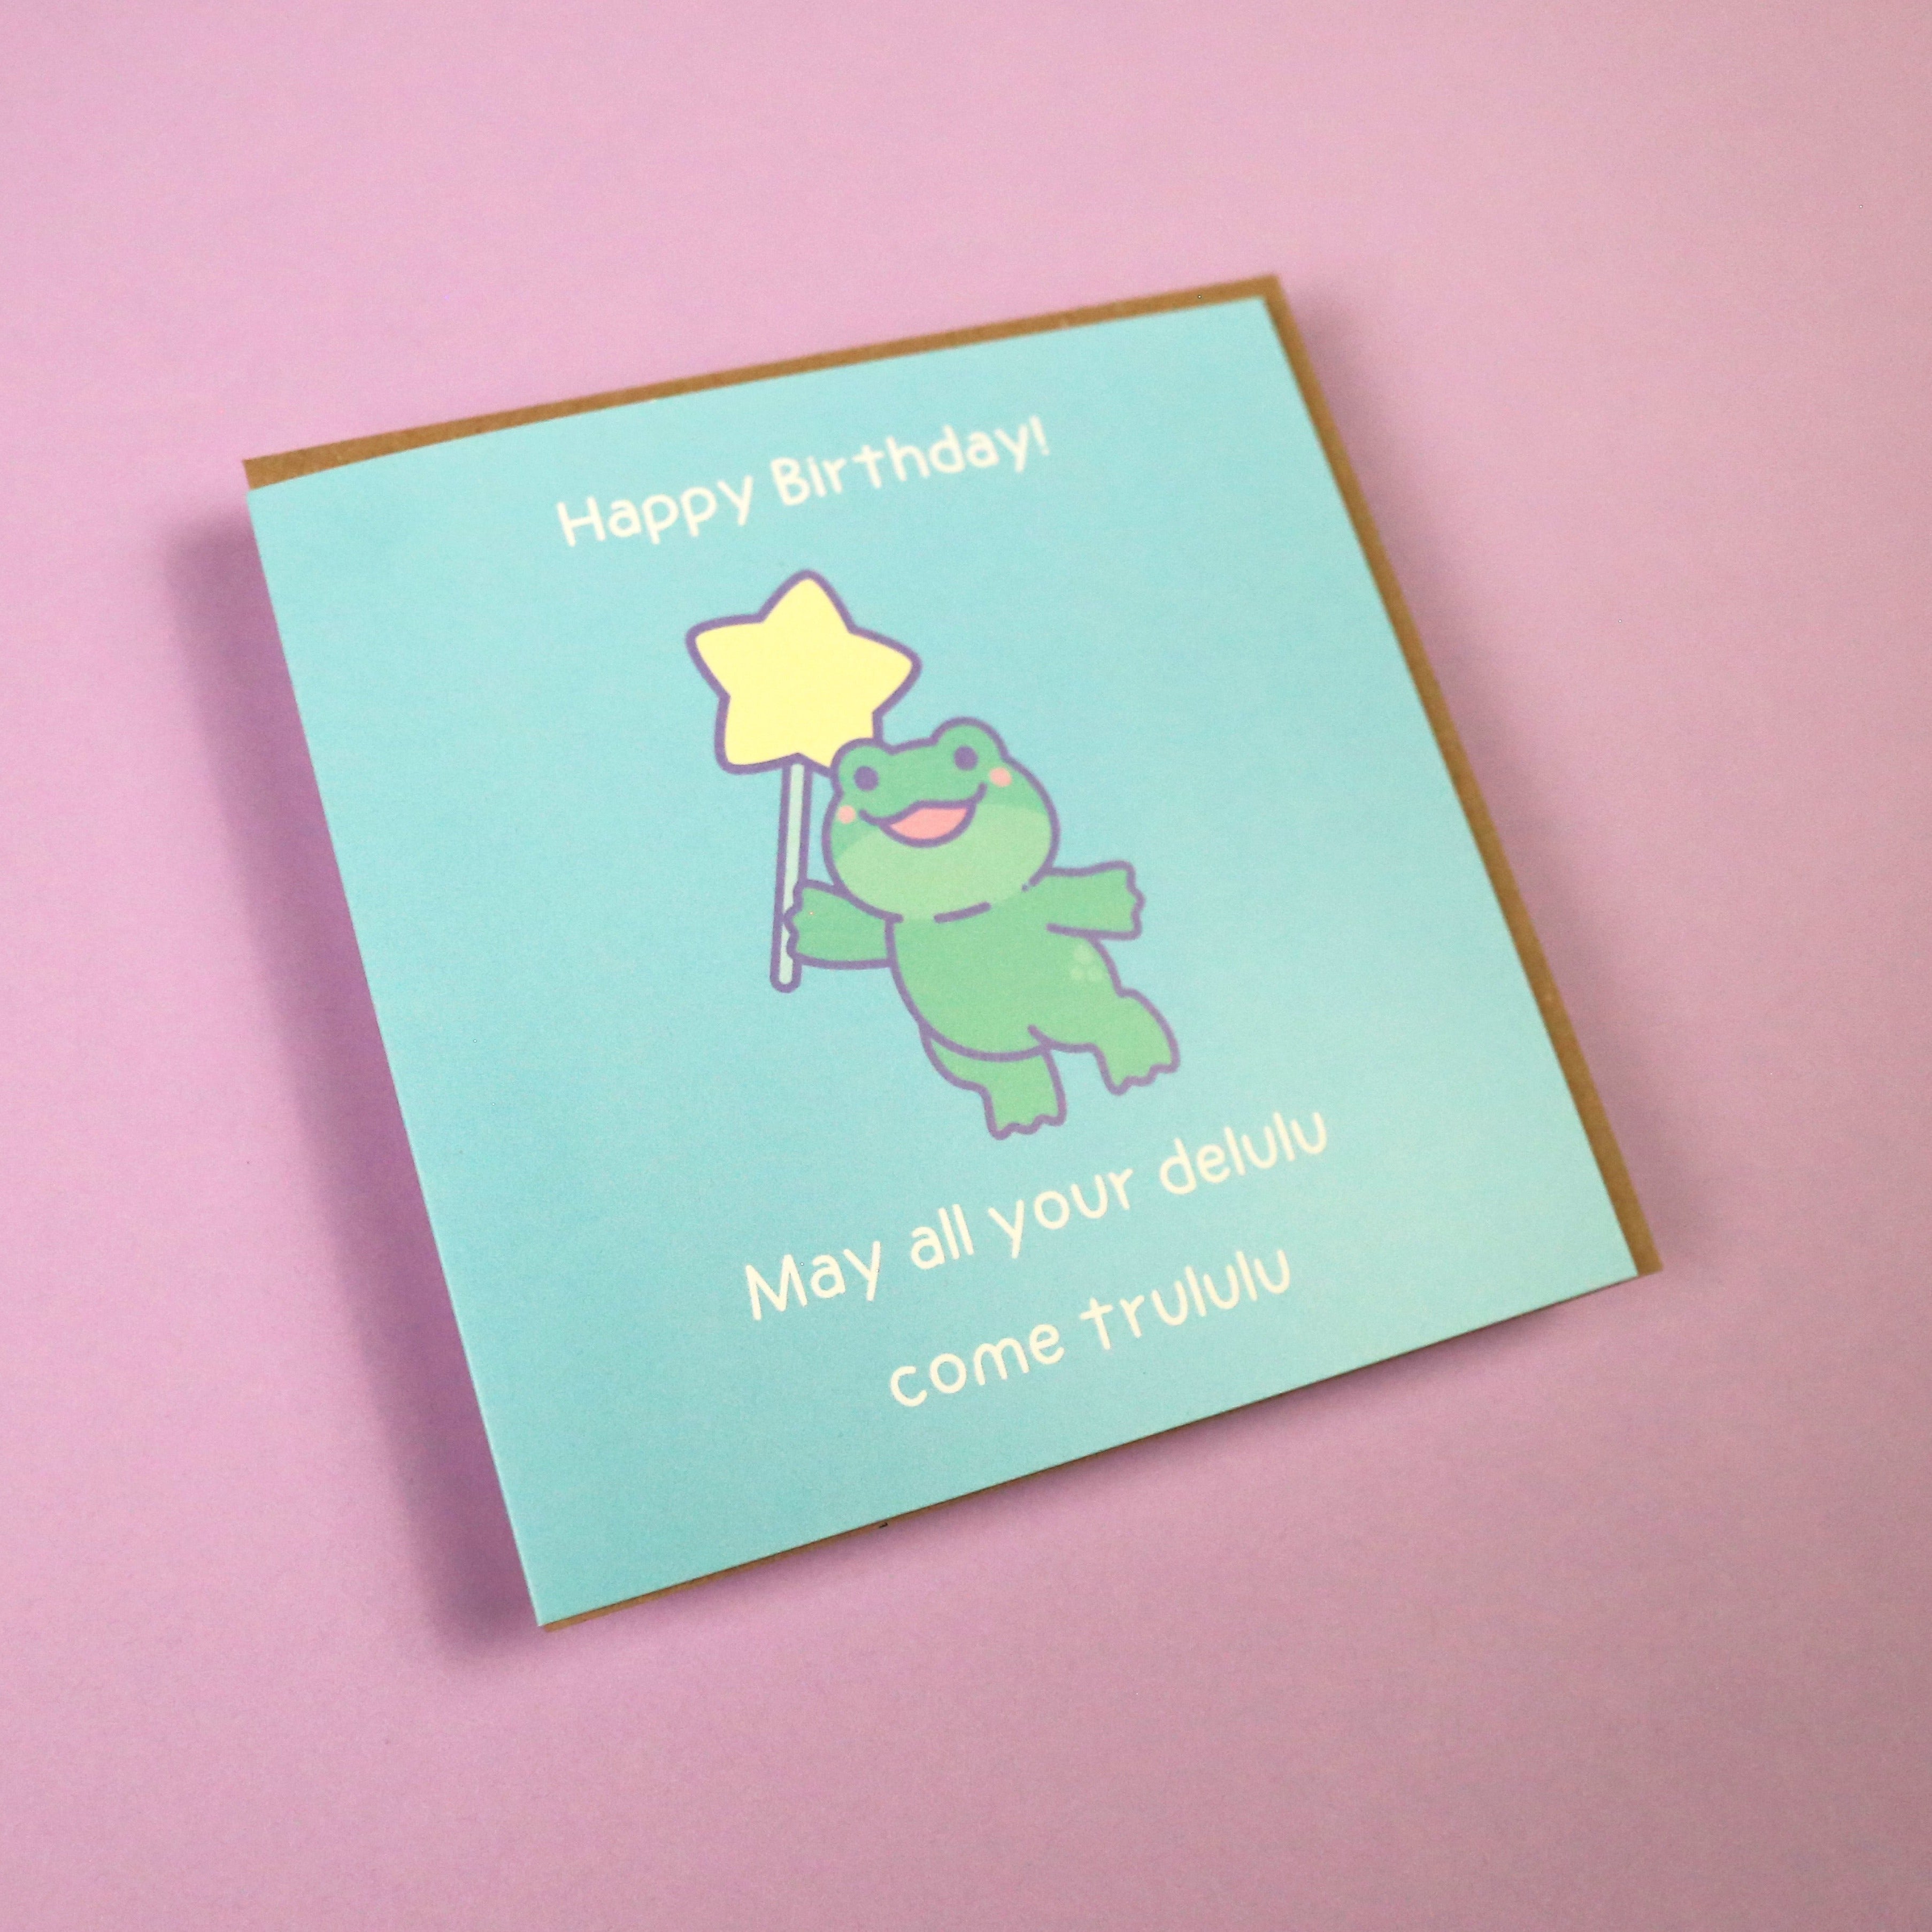 Delulu Frog Birthday Card